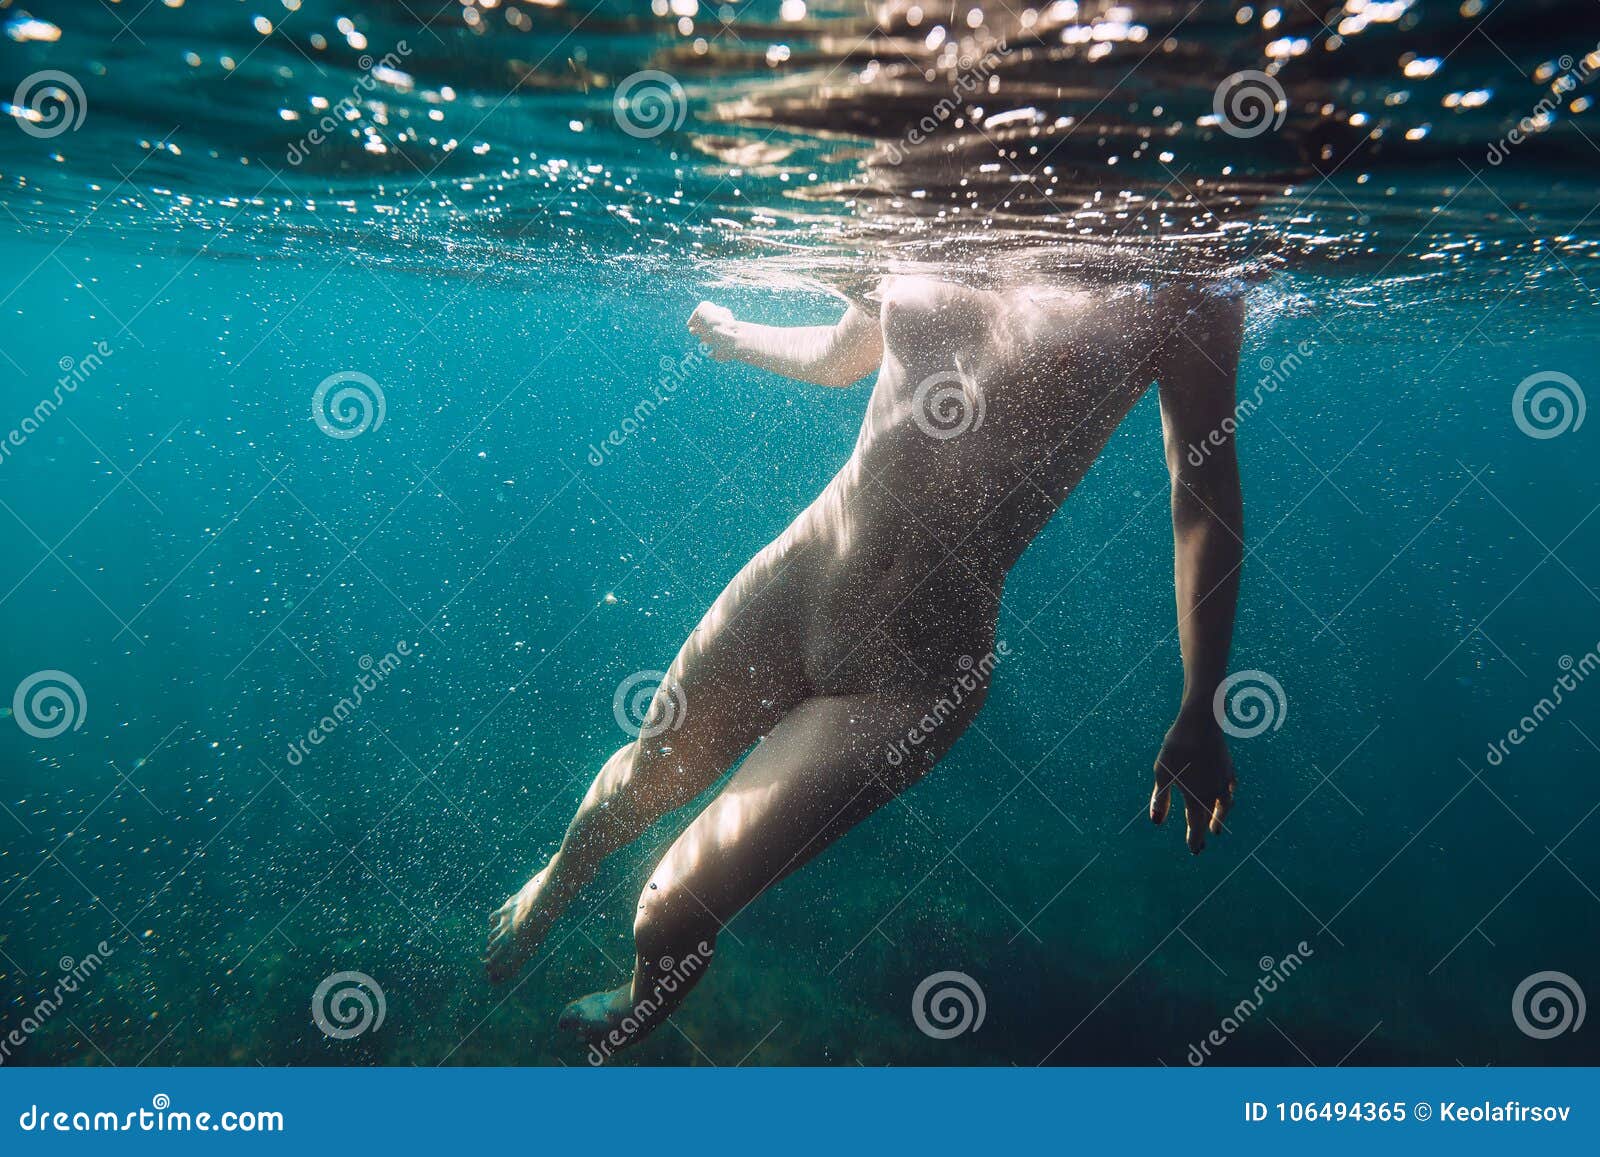 Amy Brenneman Naked Women Swimming Logo